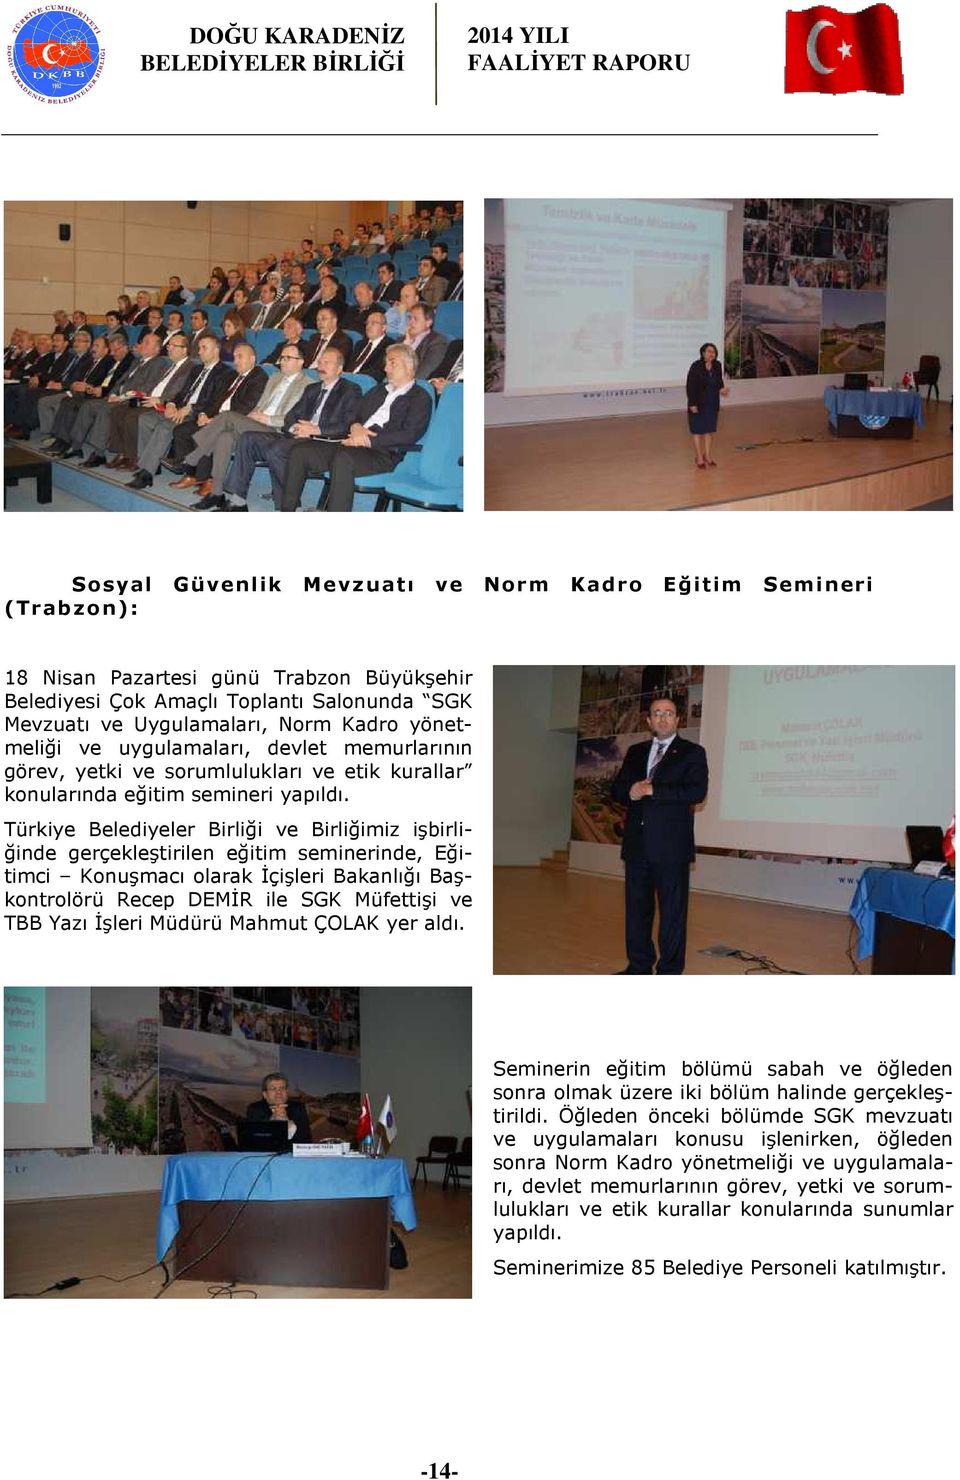 Türkiye Belediyeler Birliği ve Birliğimiz işbirliğinde gerçekleştirilen eğitim seminerinde, Eğitimci Konuşmacı olarak İçişleri Bakanlığı Başkontrolörü Recep DEMİR ile SGK Müfettişi ve TBB Yazı İşleri